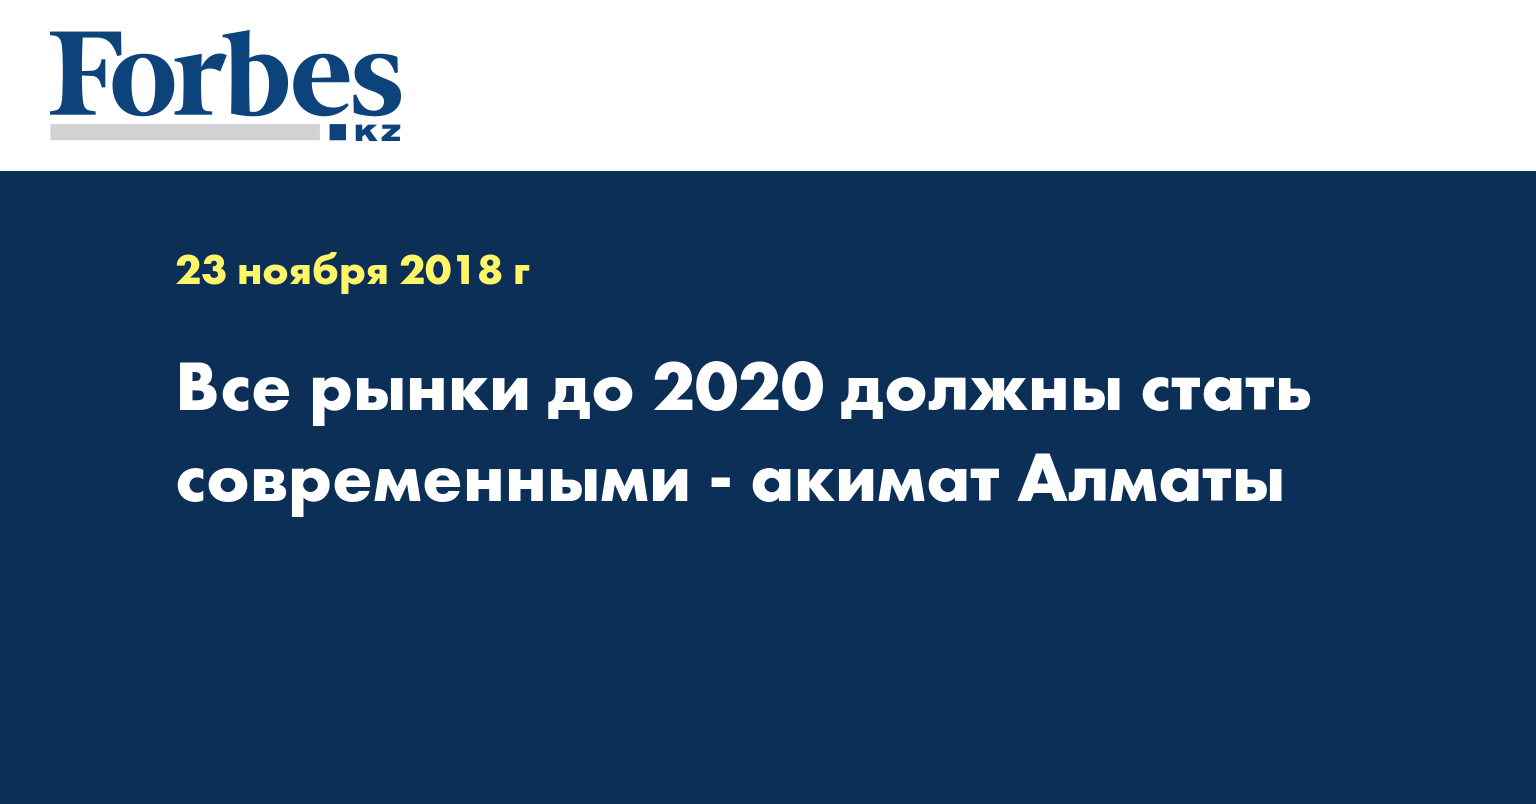 Все рынки до 2020 должны стать современными - акимат Алматы